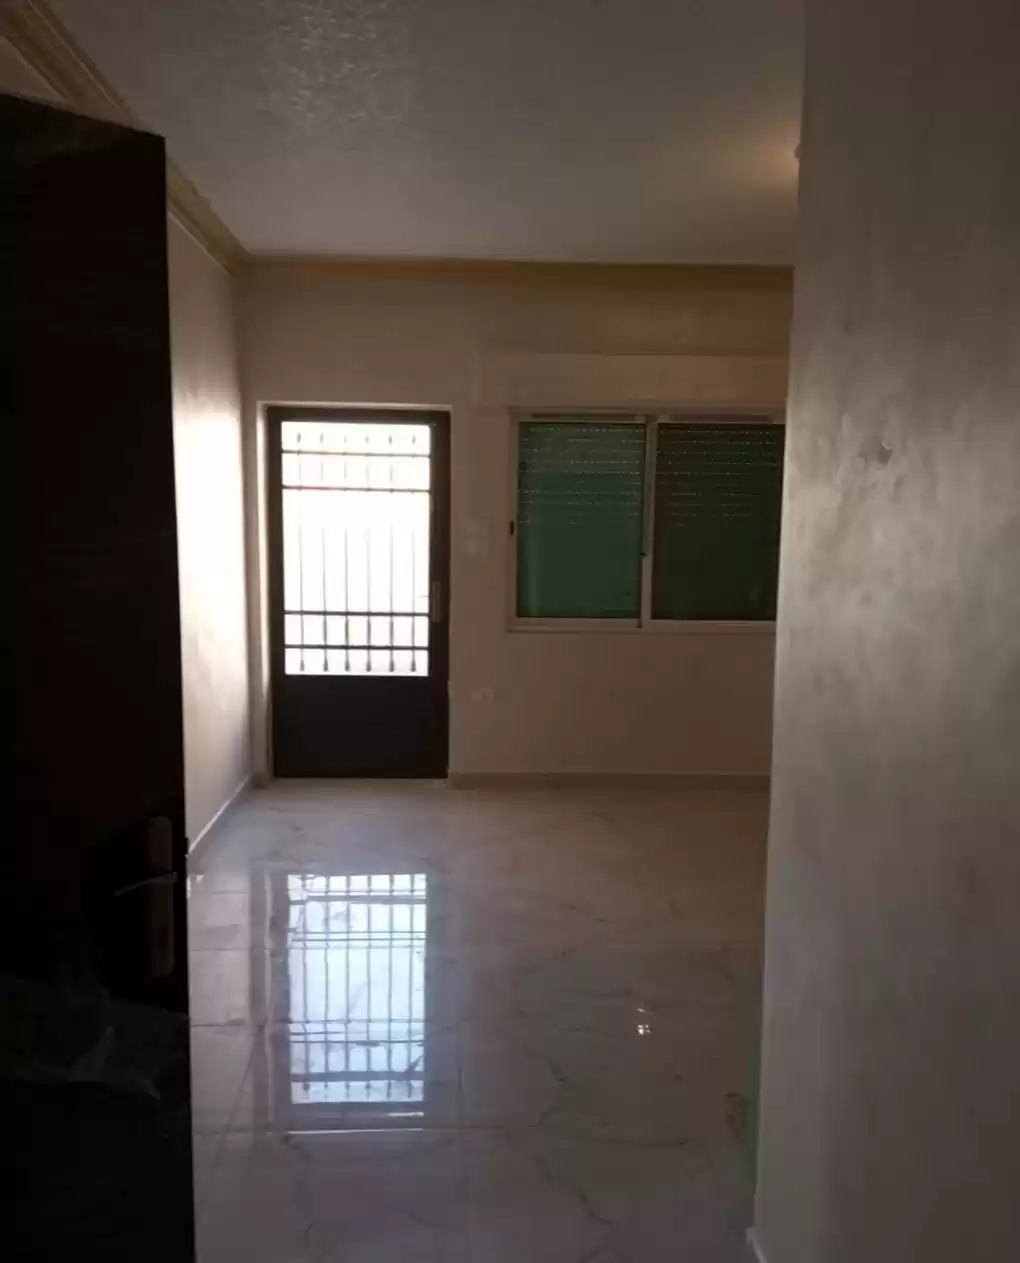 Résidentiel Propriété prête 2 chambres U / f Appartement  a louer au Amman #26233 - 1  image 